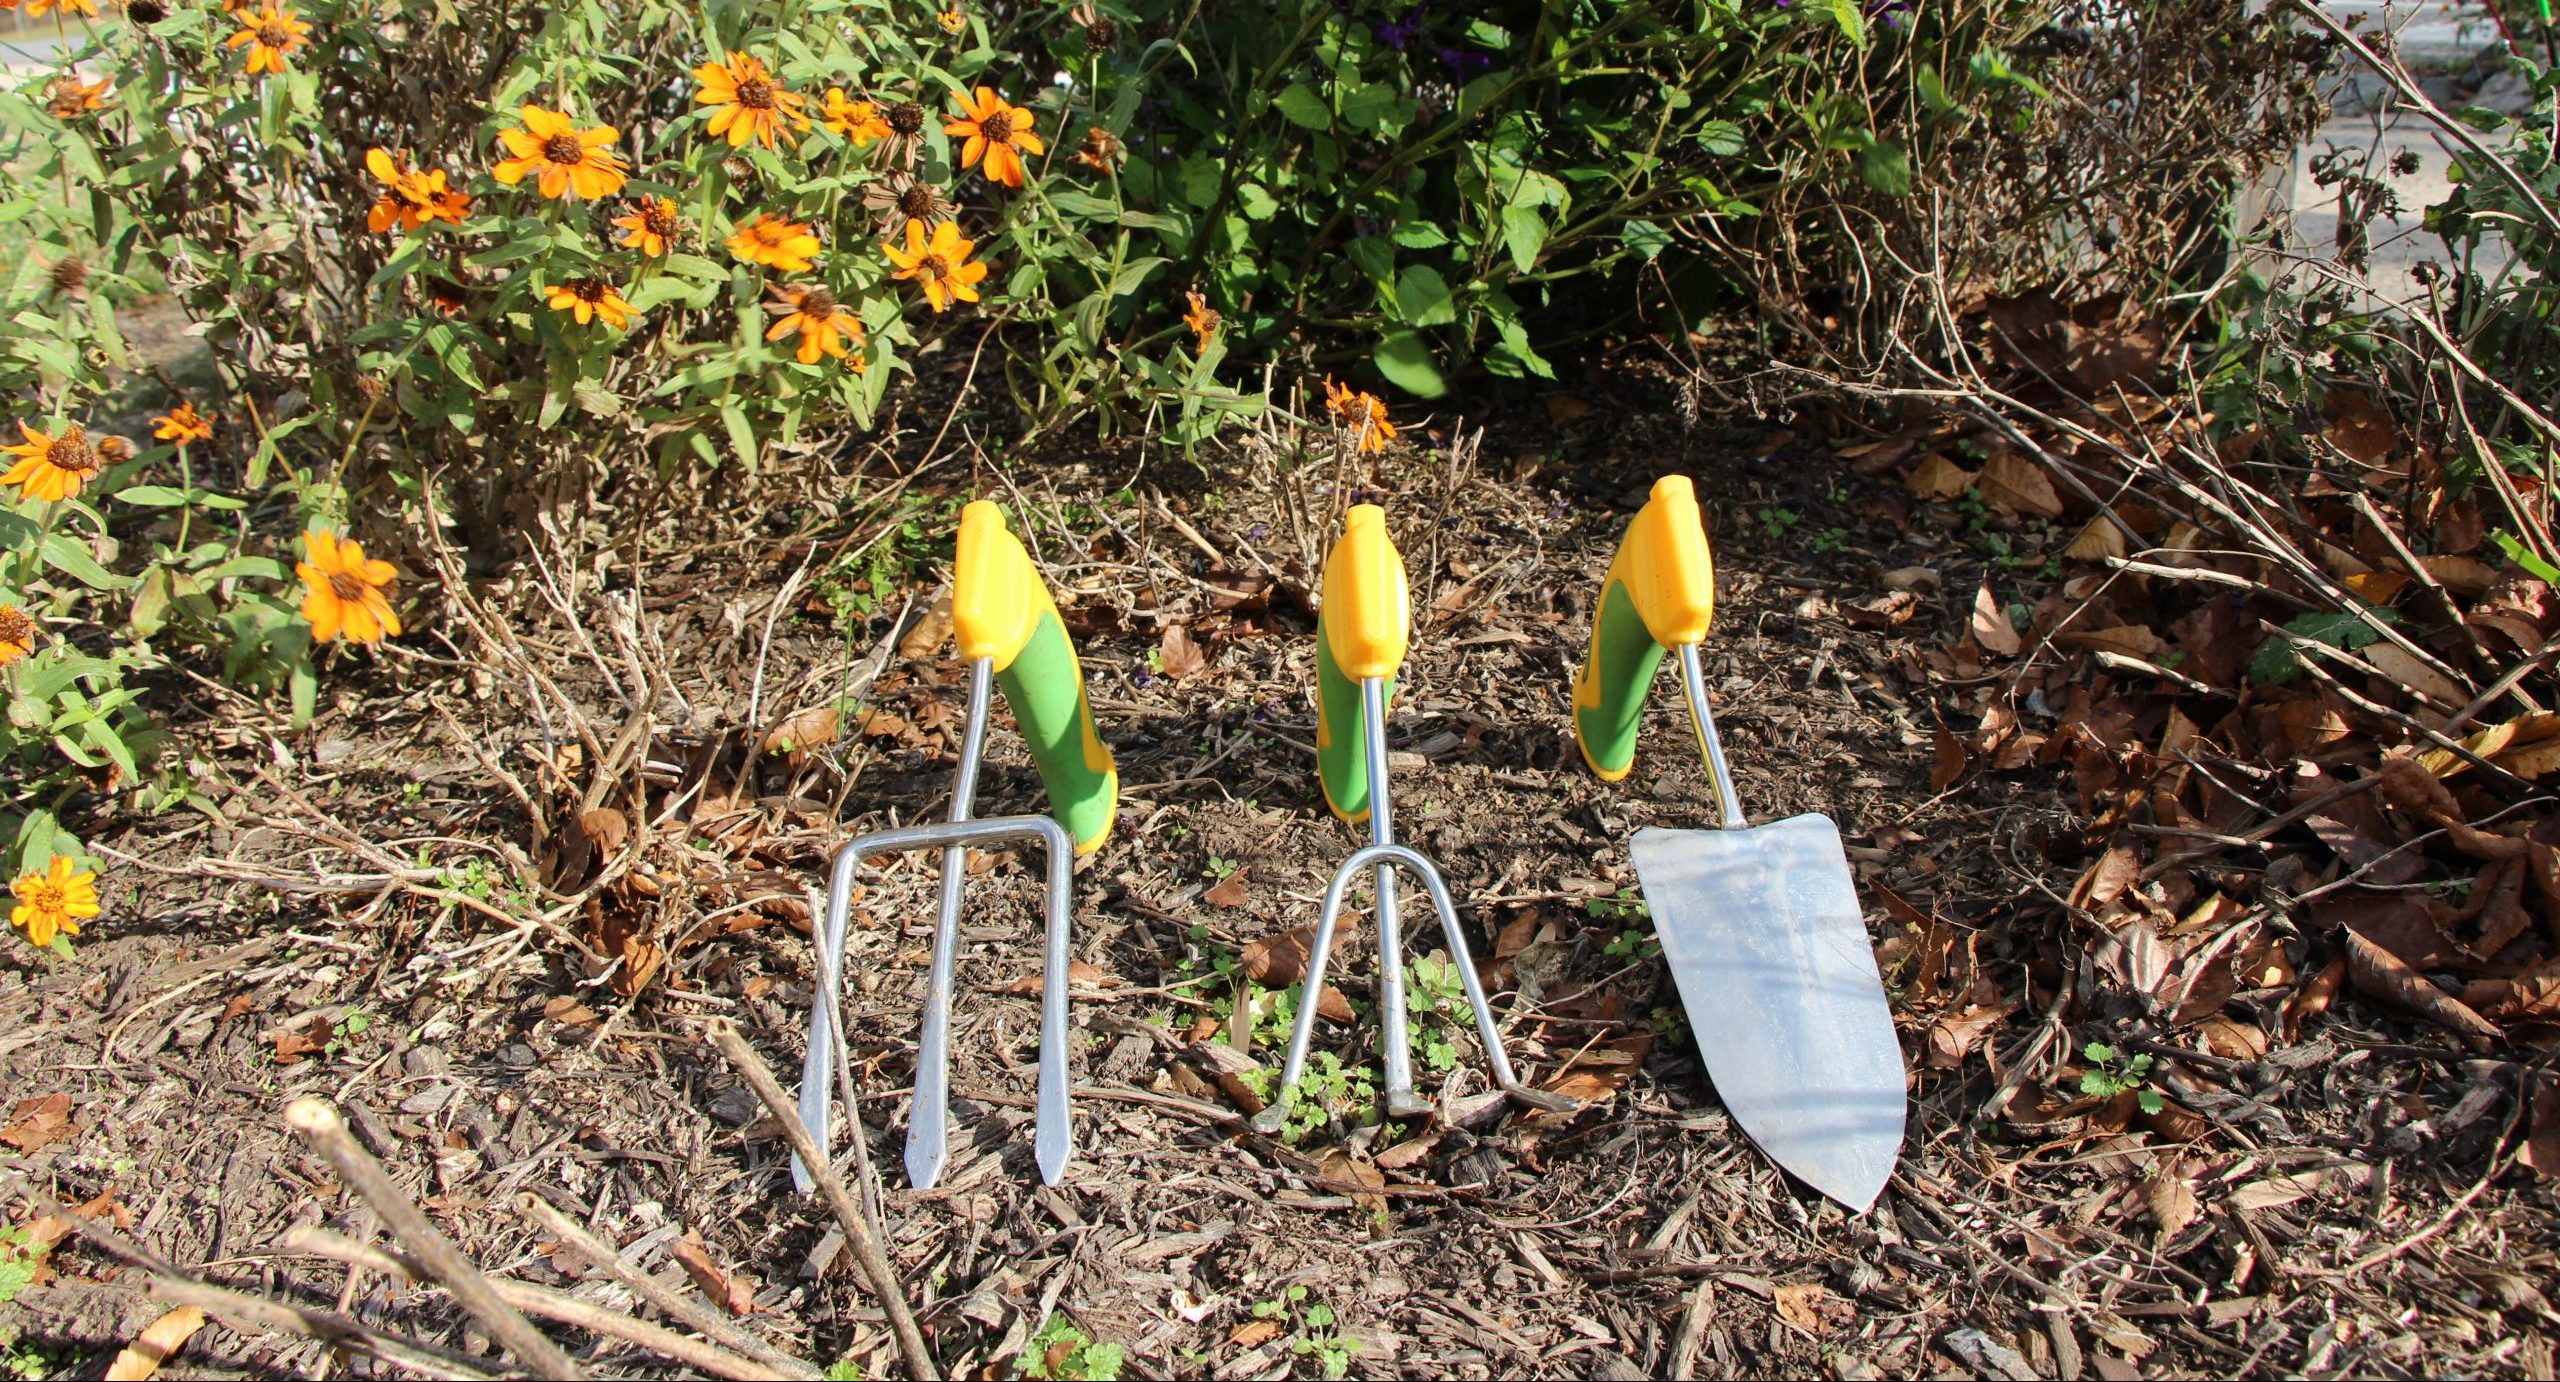 Adaptive Gardening Equipment